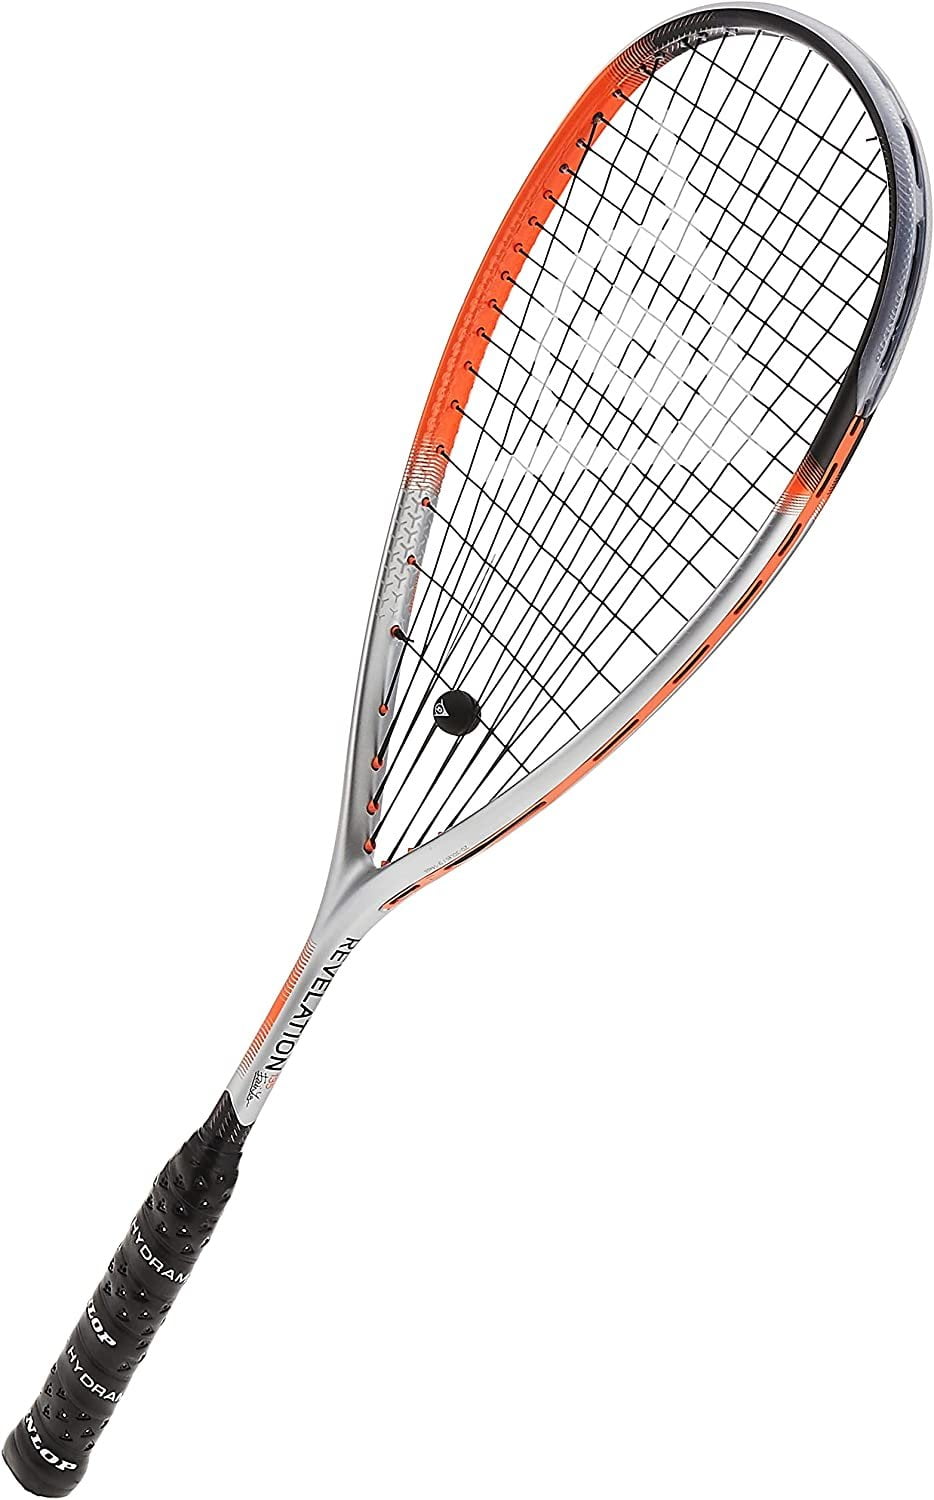 Bank huilen federatie Dunlop Hyperfibre XT Revelation 135 Squash Racquet - Walmart.com